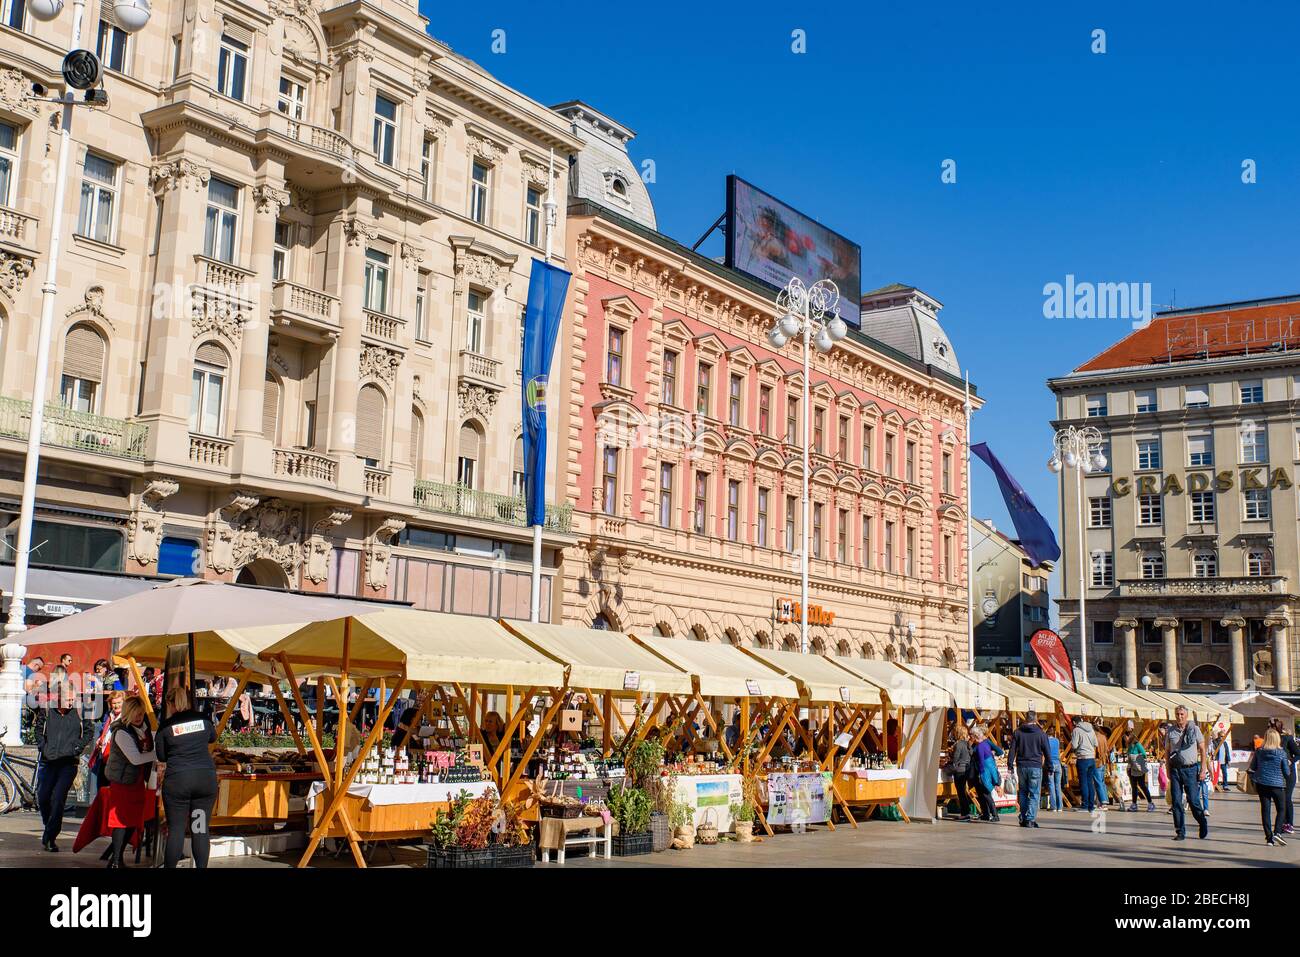 Der Markt auf dem Ban Jelačić Platz, dem zentralen Platz der Stadt Zagreb, Kroatien Stockfoto